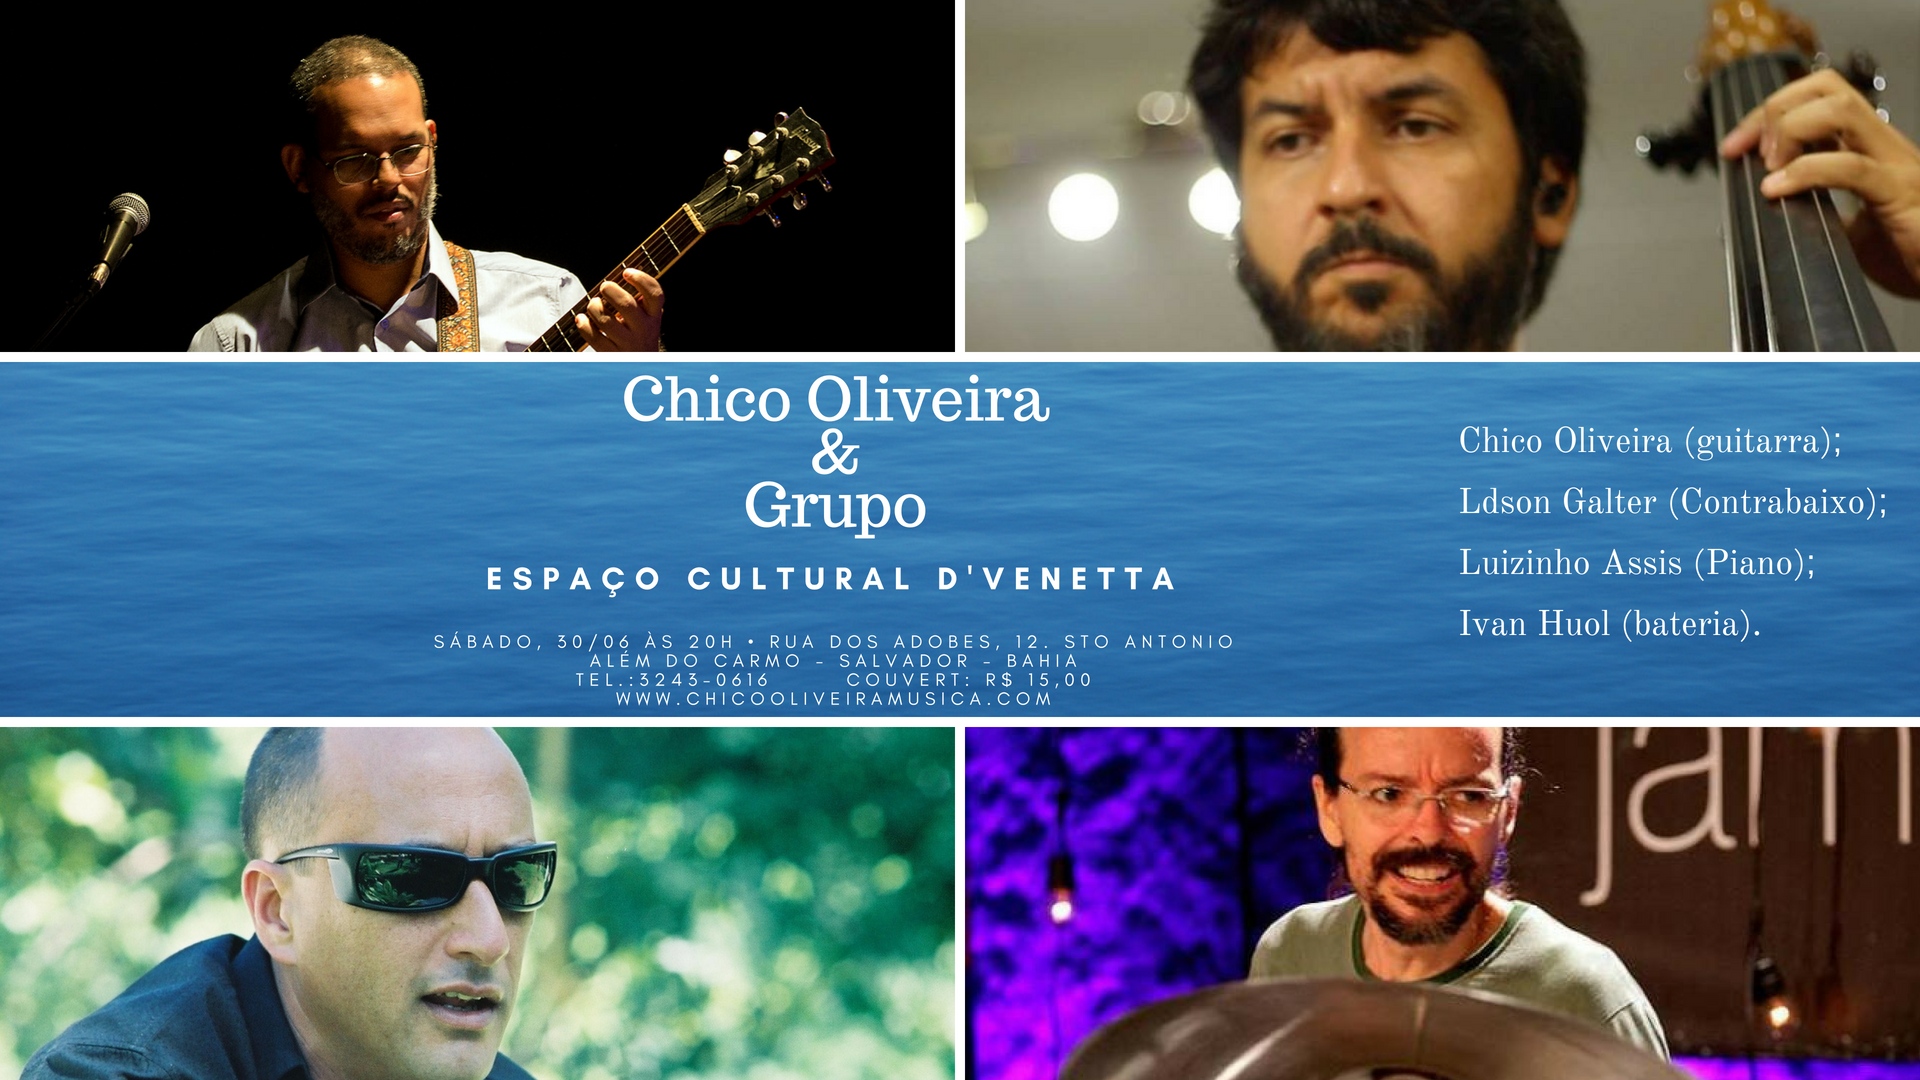 Chico Oliveira grupo Espaço Cultural D'Venetta com Ldson Galter, Luizinho Assis e Ivan Huol.